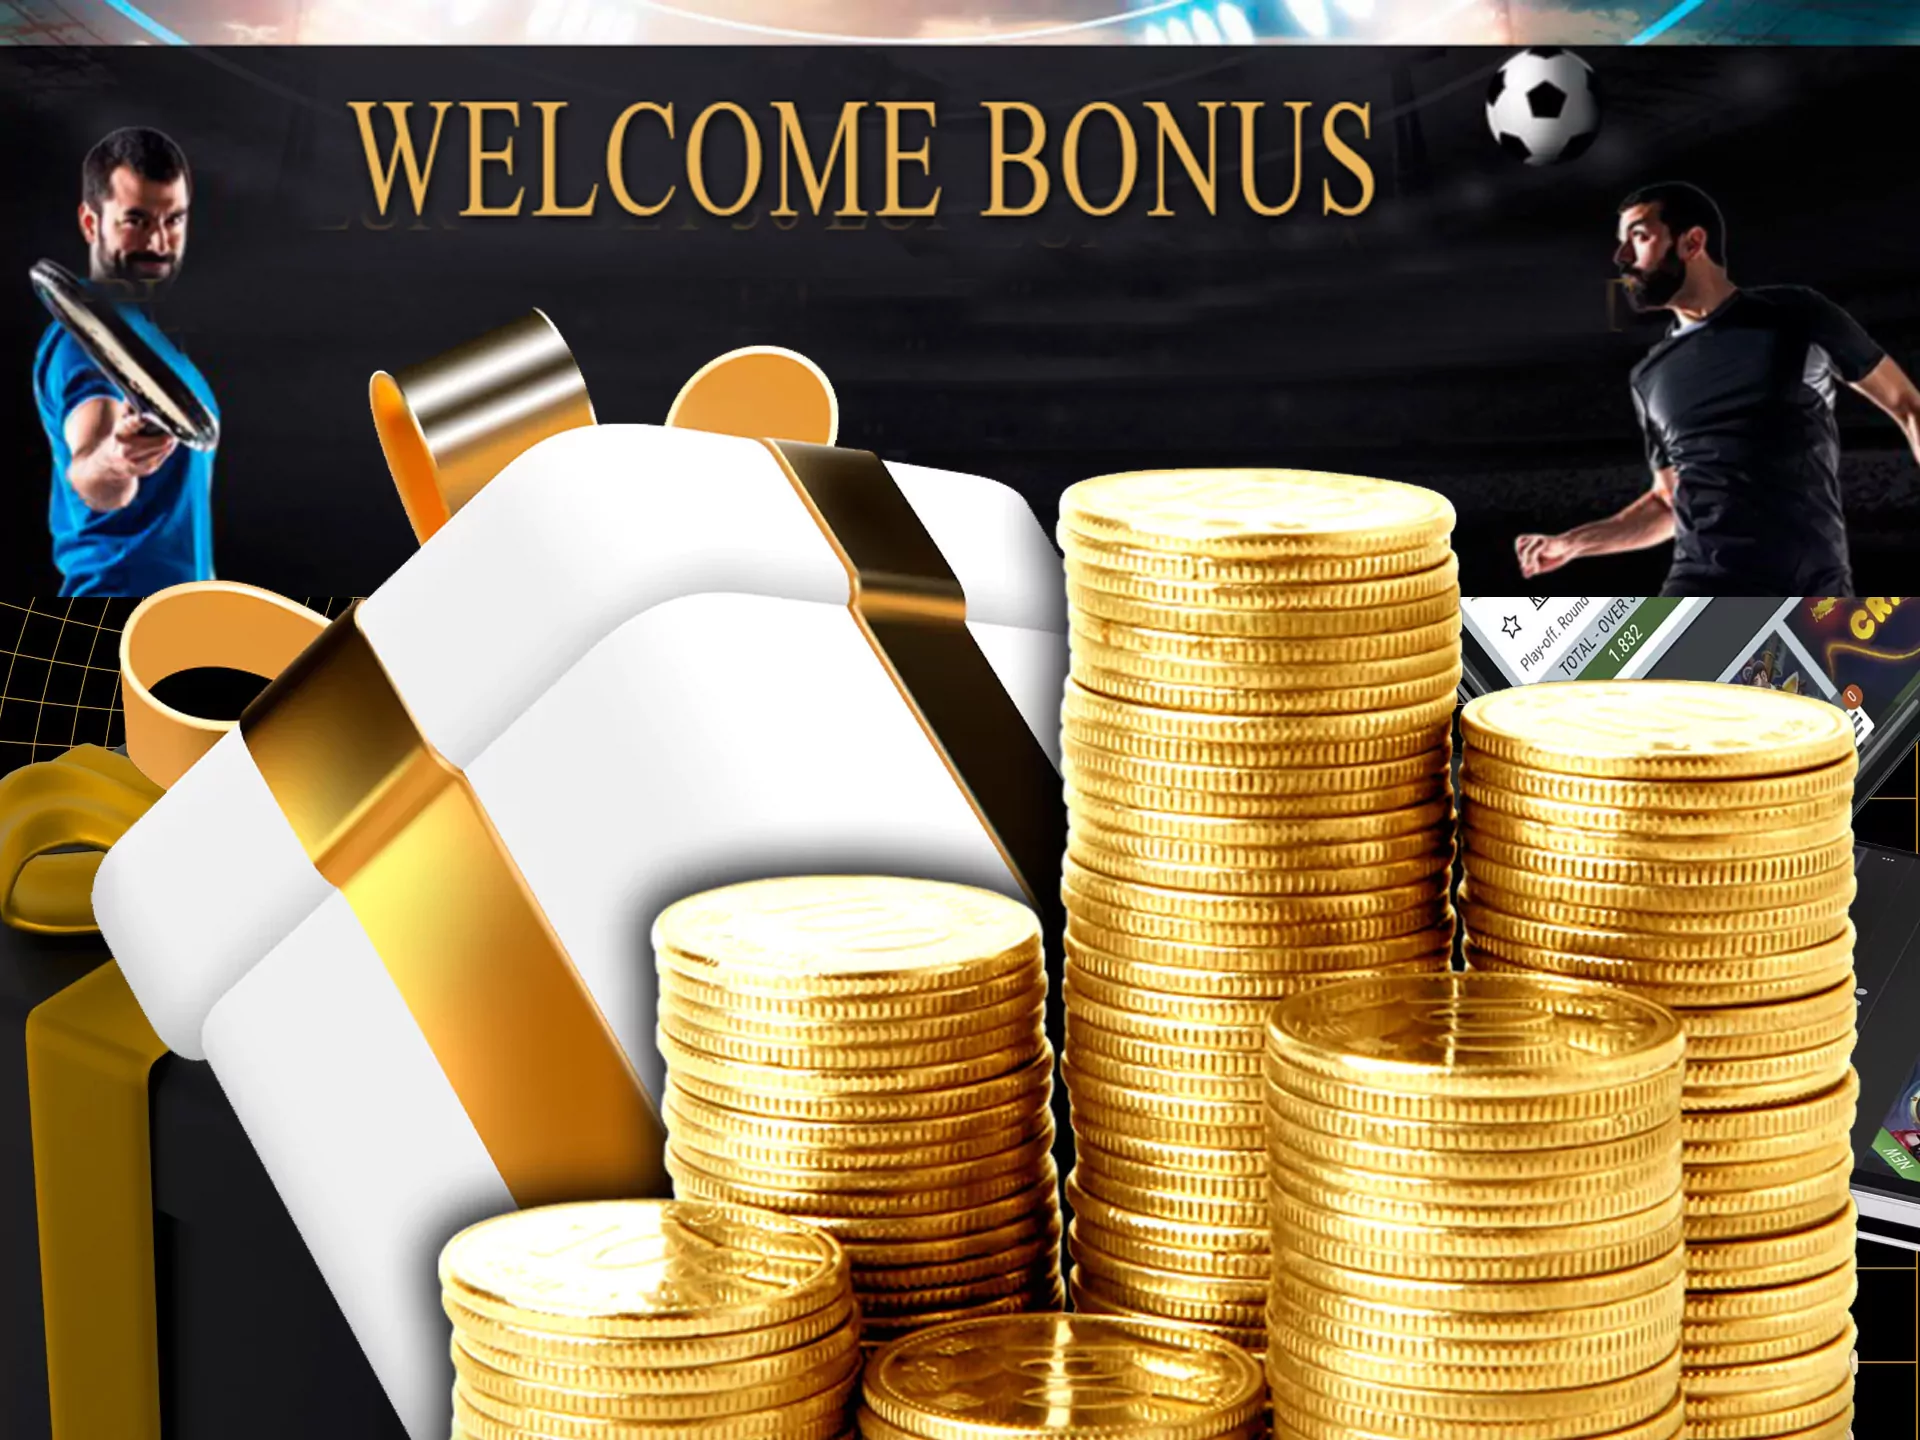 Get 1welcome bonus after registration in Melbet.